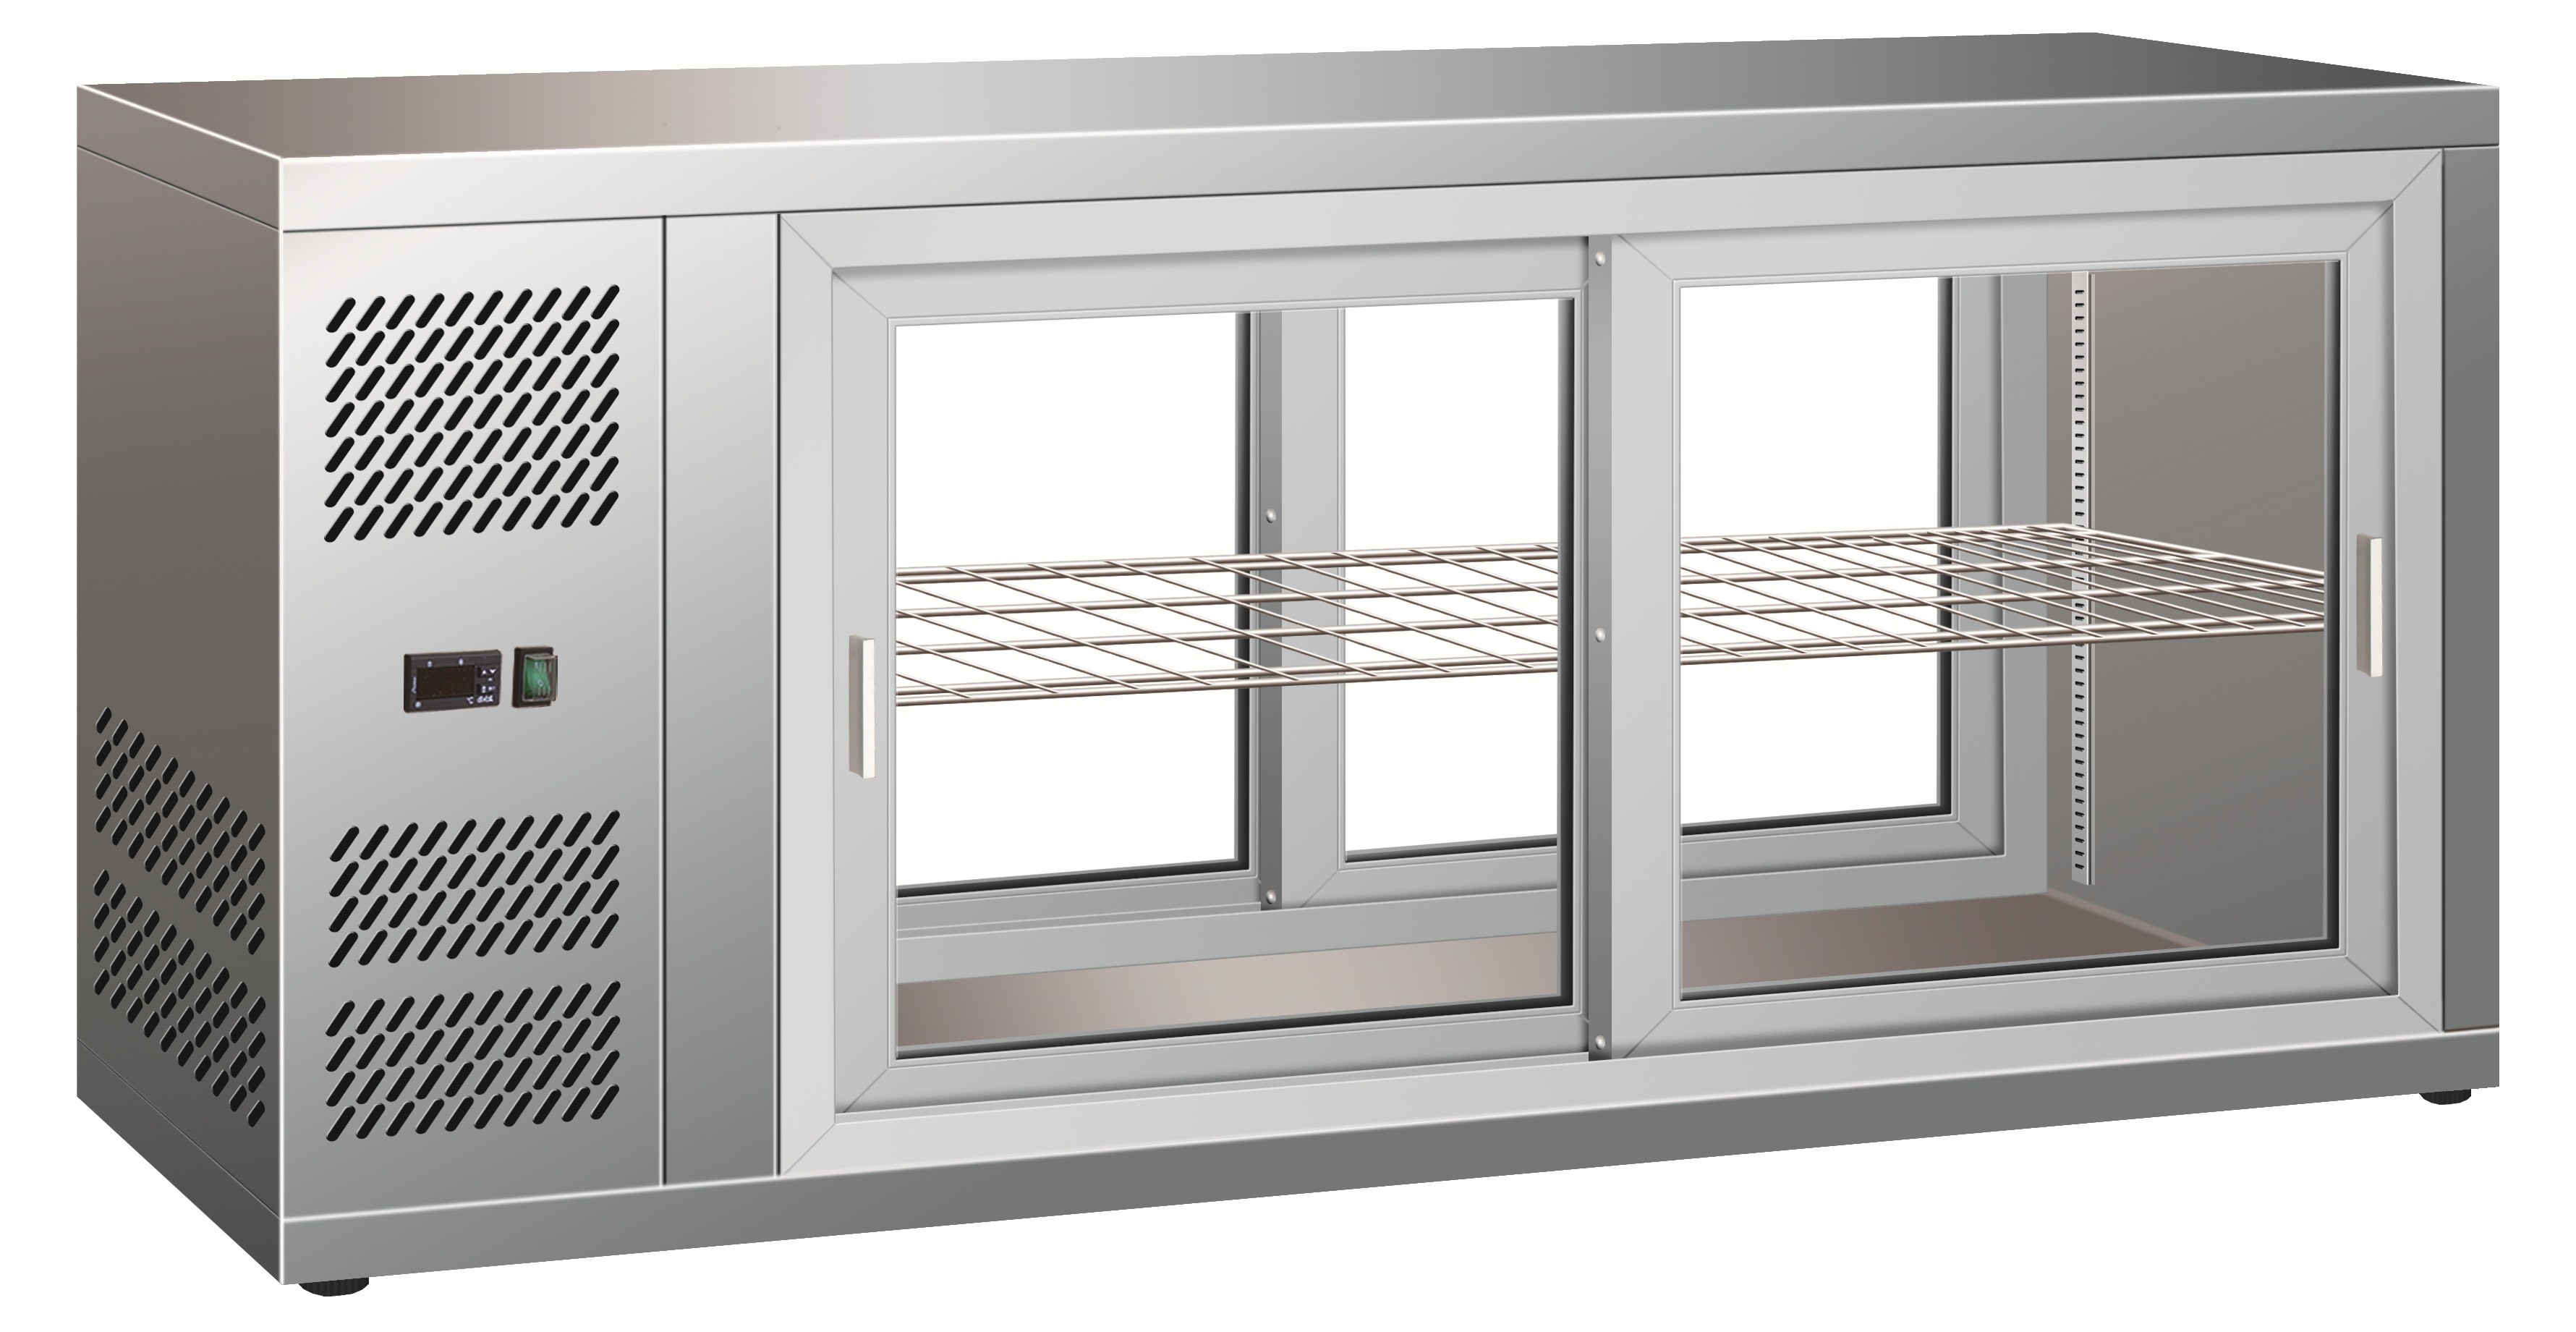 Tischkühlvitrine – Umluftkühlung – Edelstahl – Schiebetüren – Kapazität 190 L – Temperaturbereich +2-C-+8-C